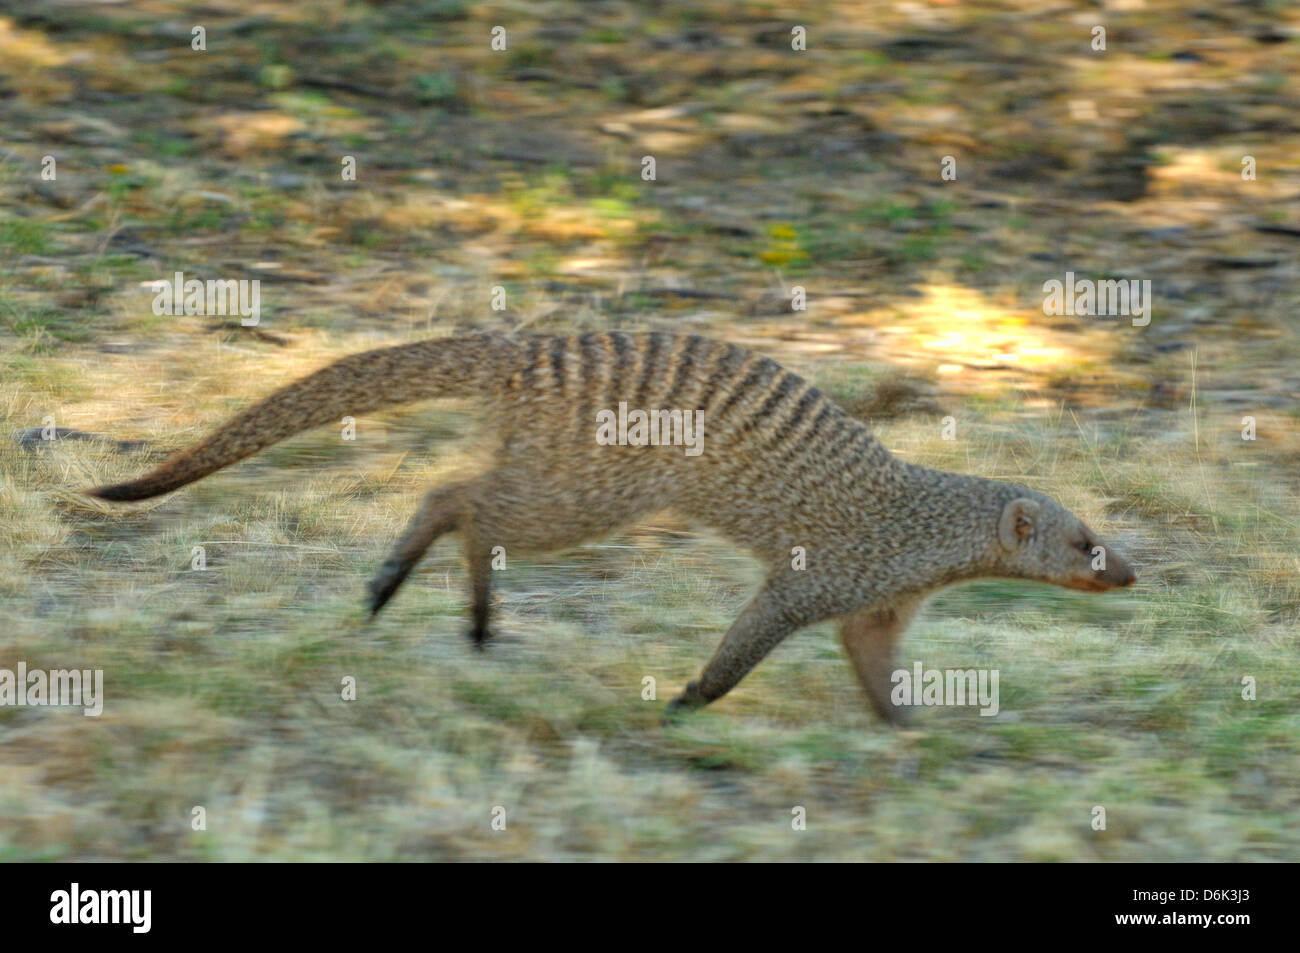 Banded Mongoose Mungos mungo Movement blur Photographed in Etosha National Park, Namibia Stock Photo